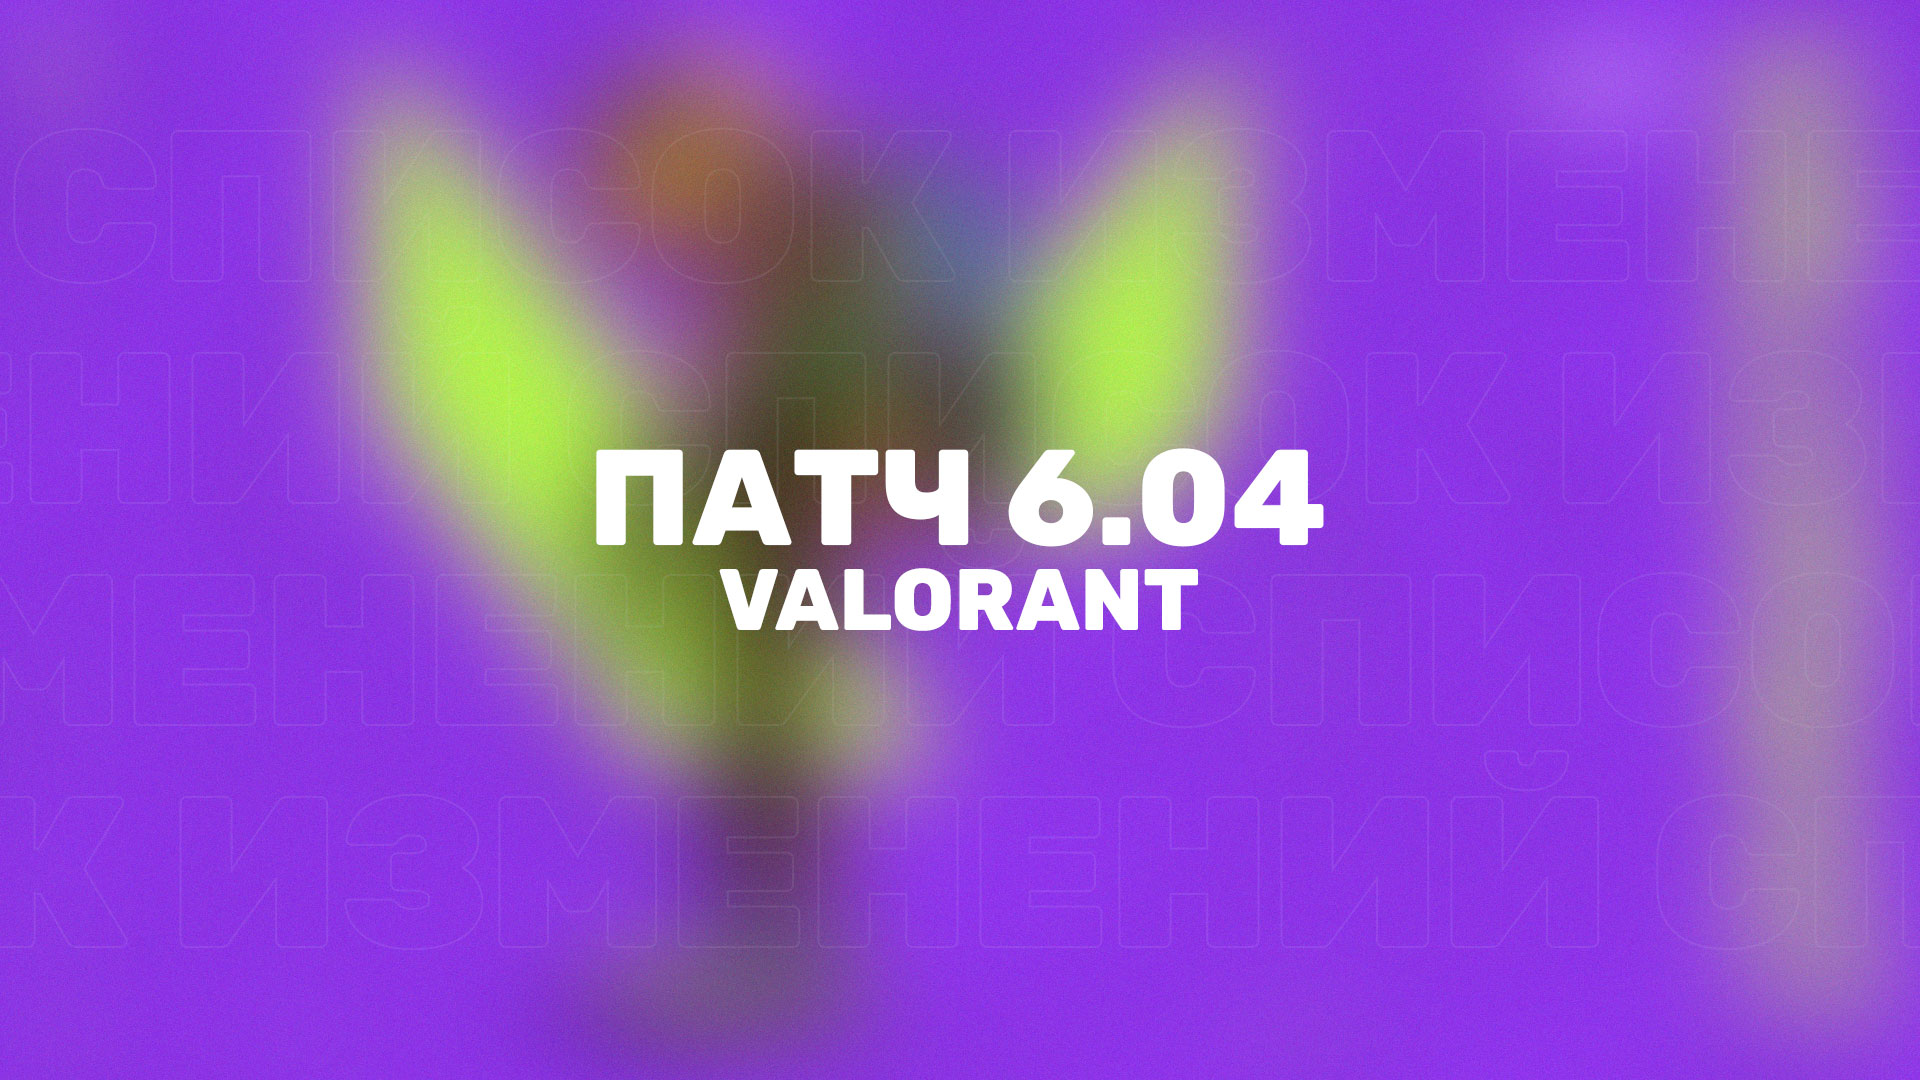 В Valorant вышел новый патч 6.04 с новым Боевым пропуском, новым агентом и другими изменениями.